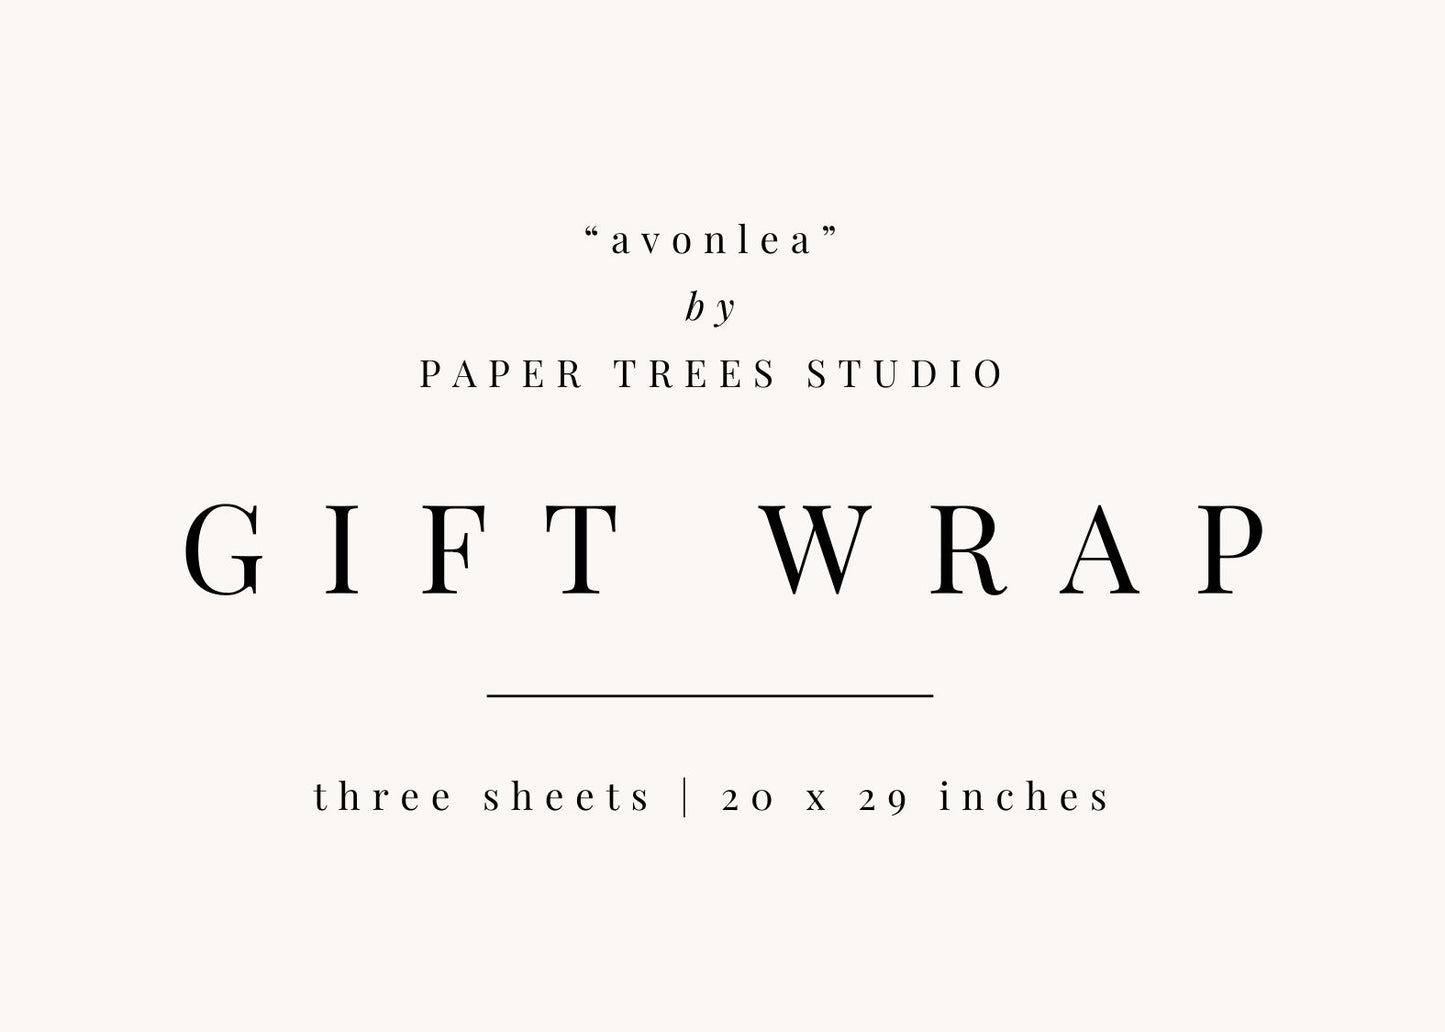 Avonlea Gift Wrap